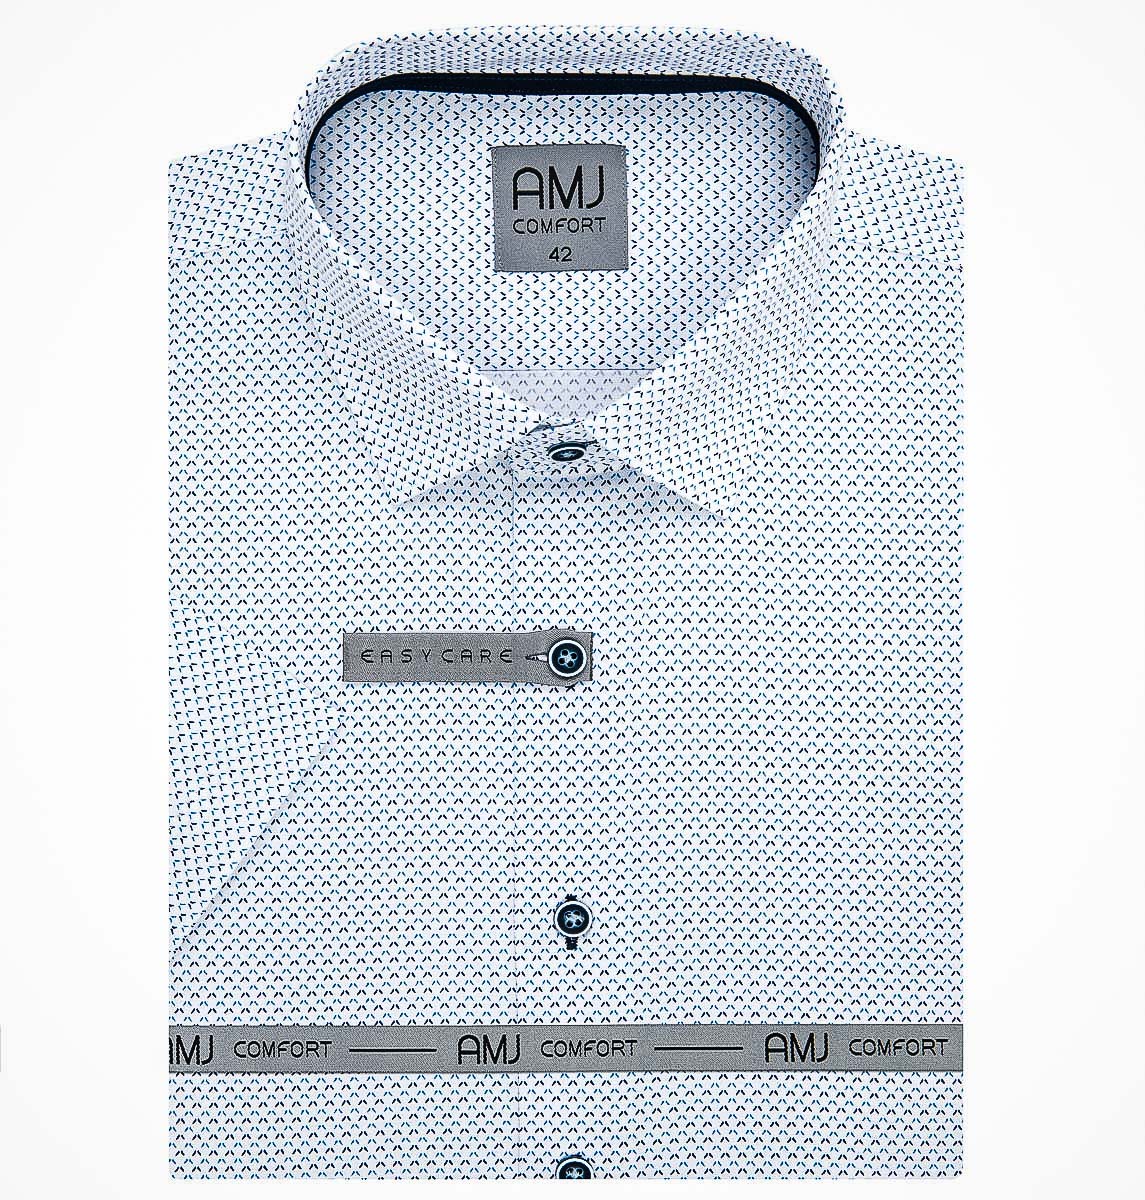 Pánská košile AMJ bavlněná, bílá s modrými čárkami VKBR1153, krátký rukáv (regular + slim fit)